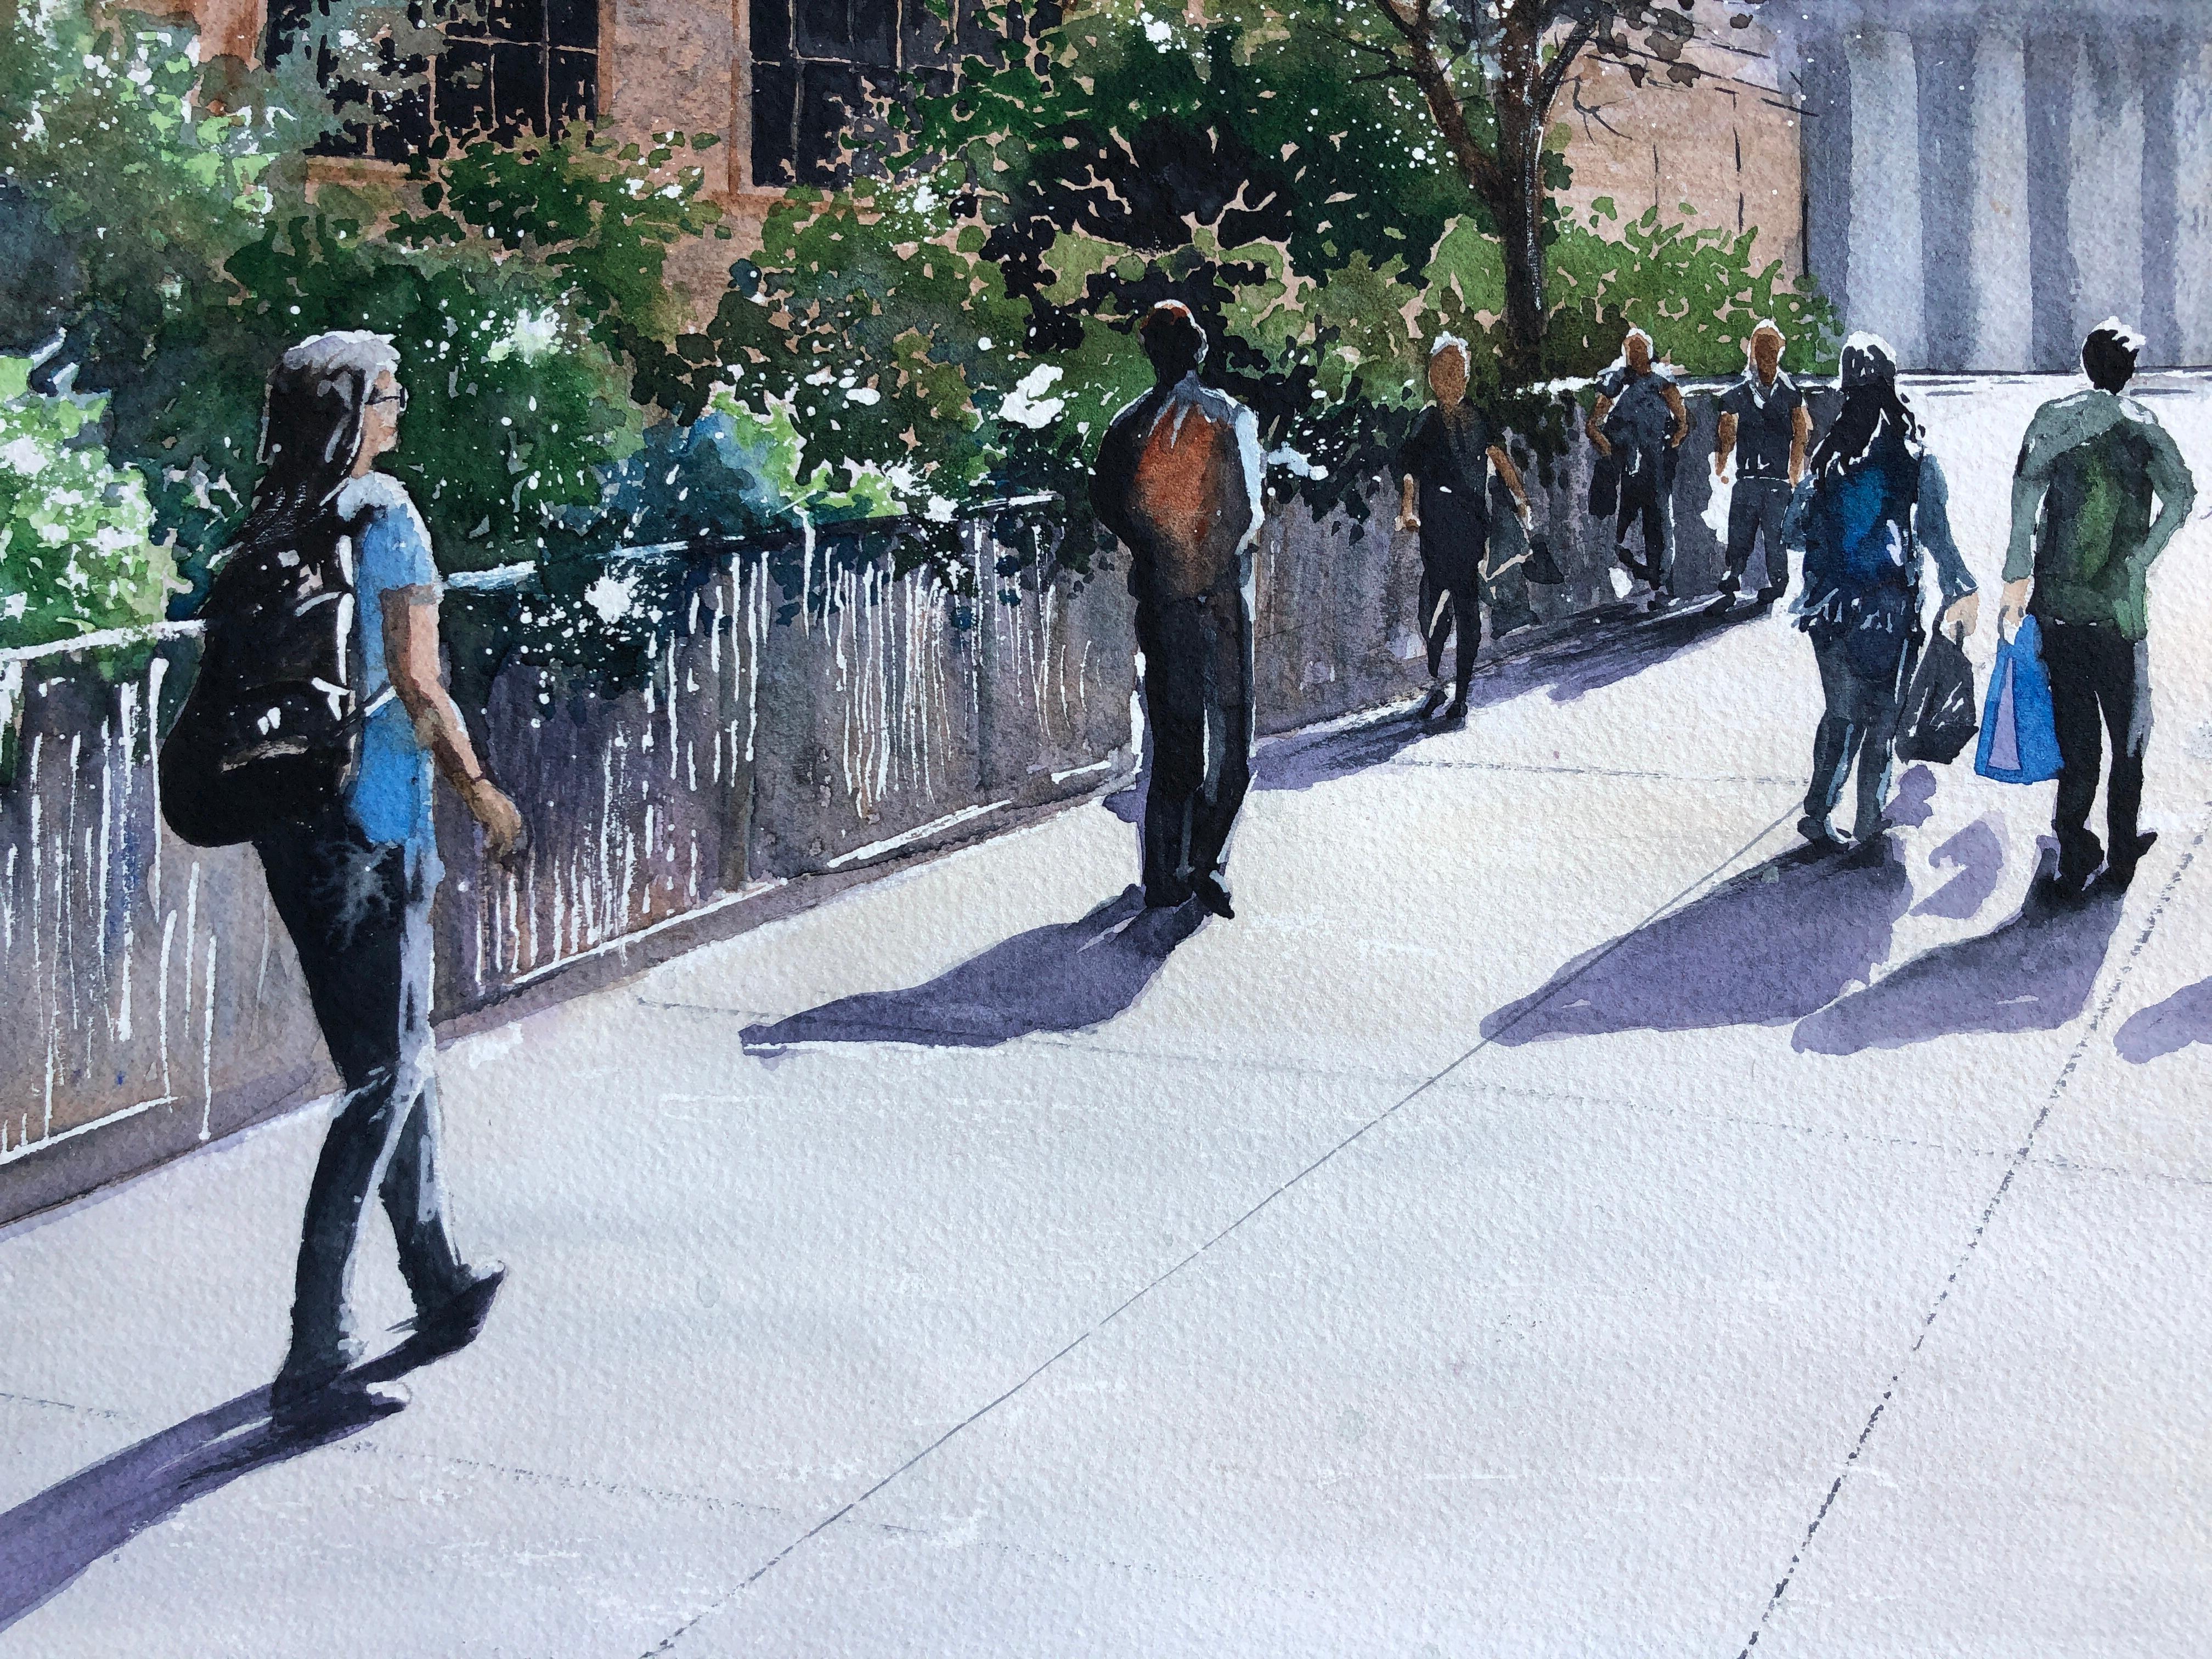 <p>Kommentare des Künstlers<br>Der Künstler Maurice Dionne malt eine städtische Szene mit Menschen, die auf dem Bürgersteig spazieren gehen. Das Stück fängt die Bewegung der mit Paketen beladenen Menschenmenge auf dem Markt in der Innenstadt ein.